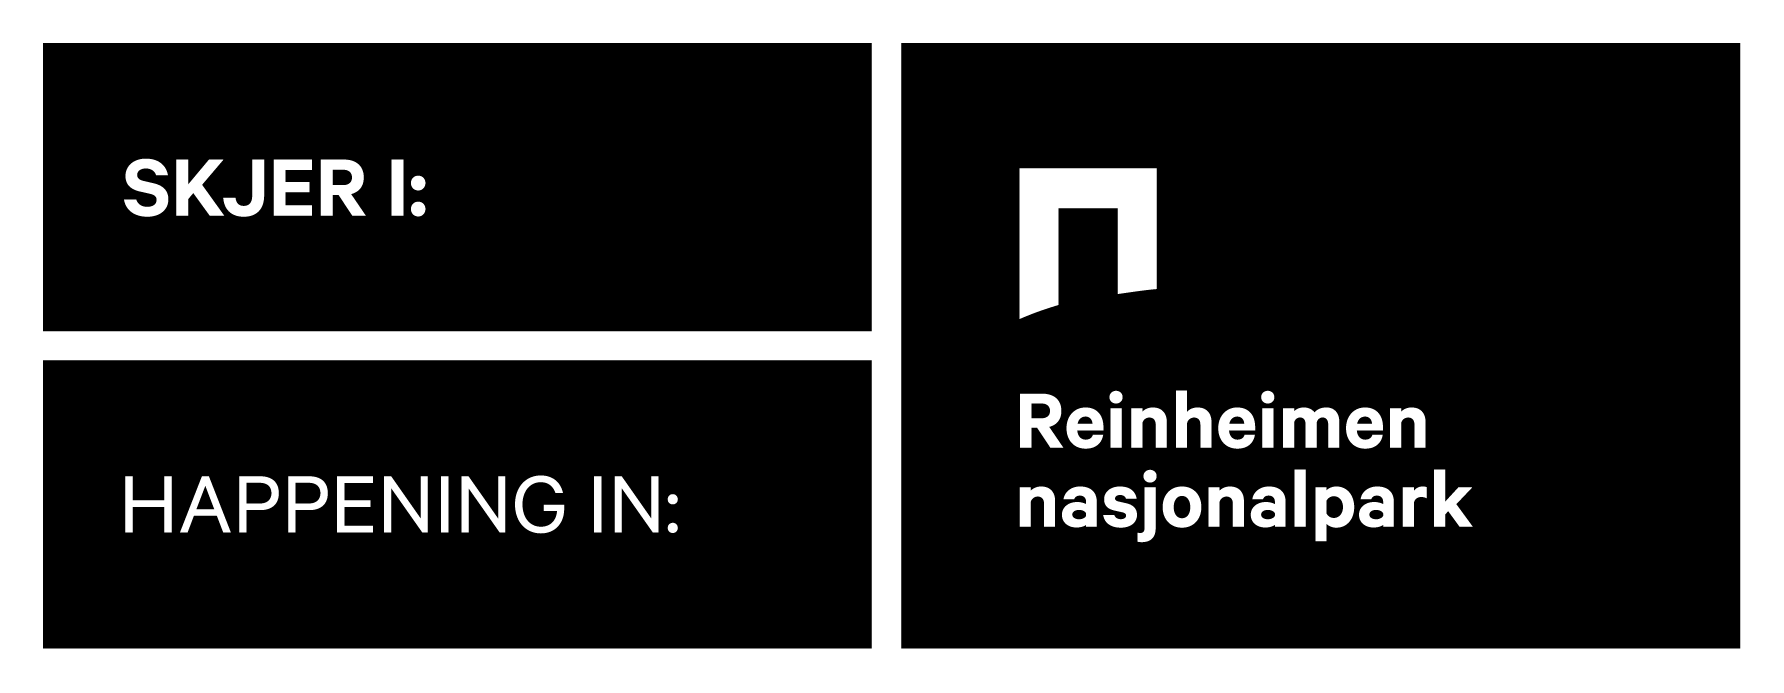 Skjer i Reinheimen nasjonalpark logo